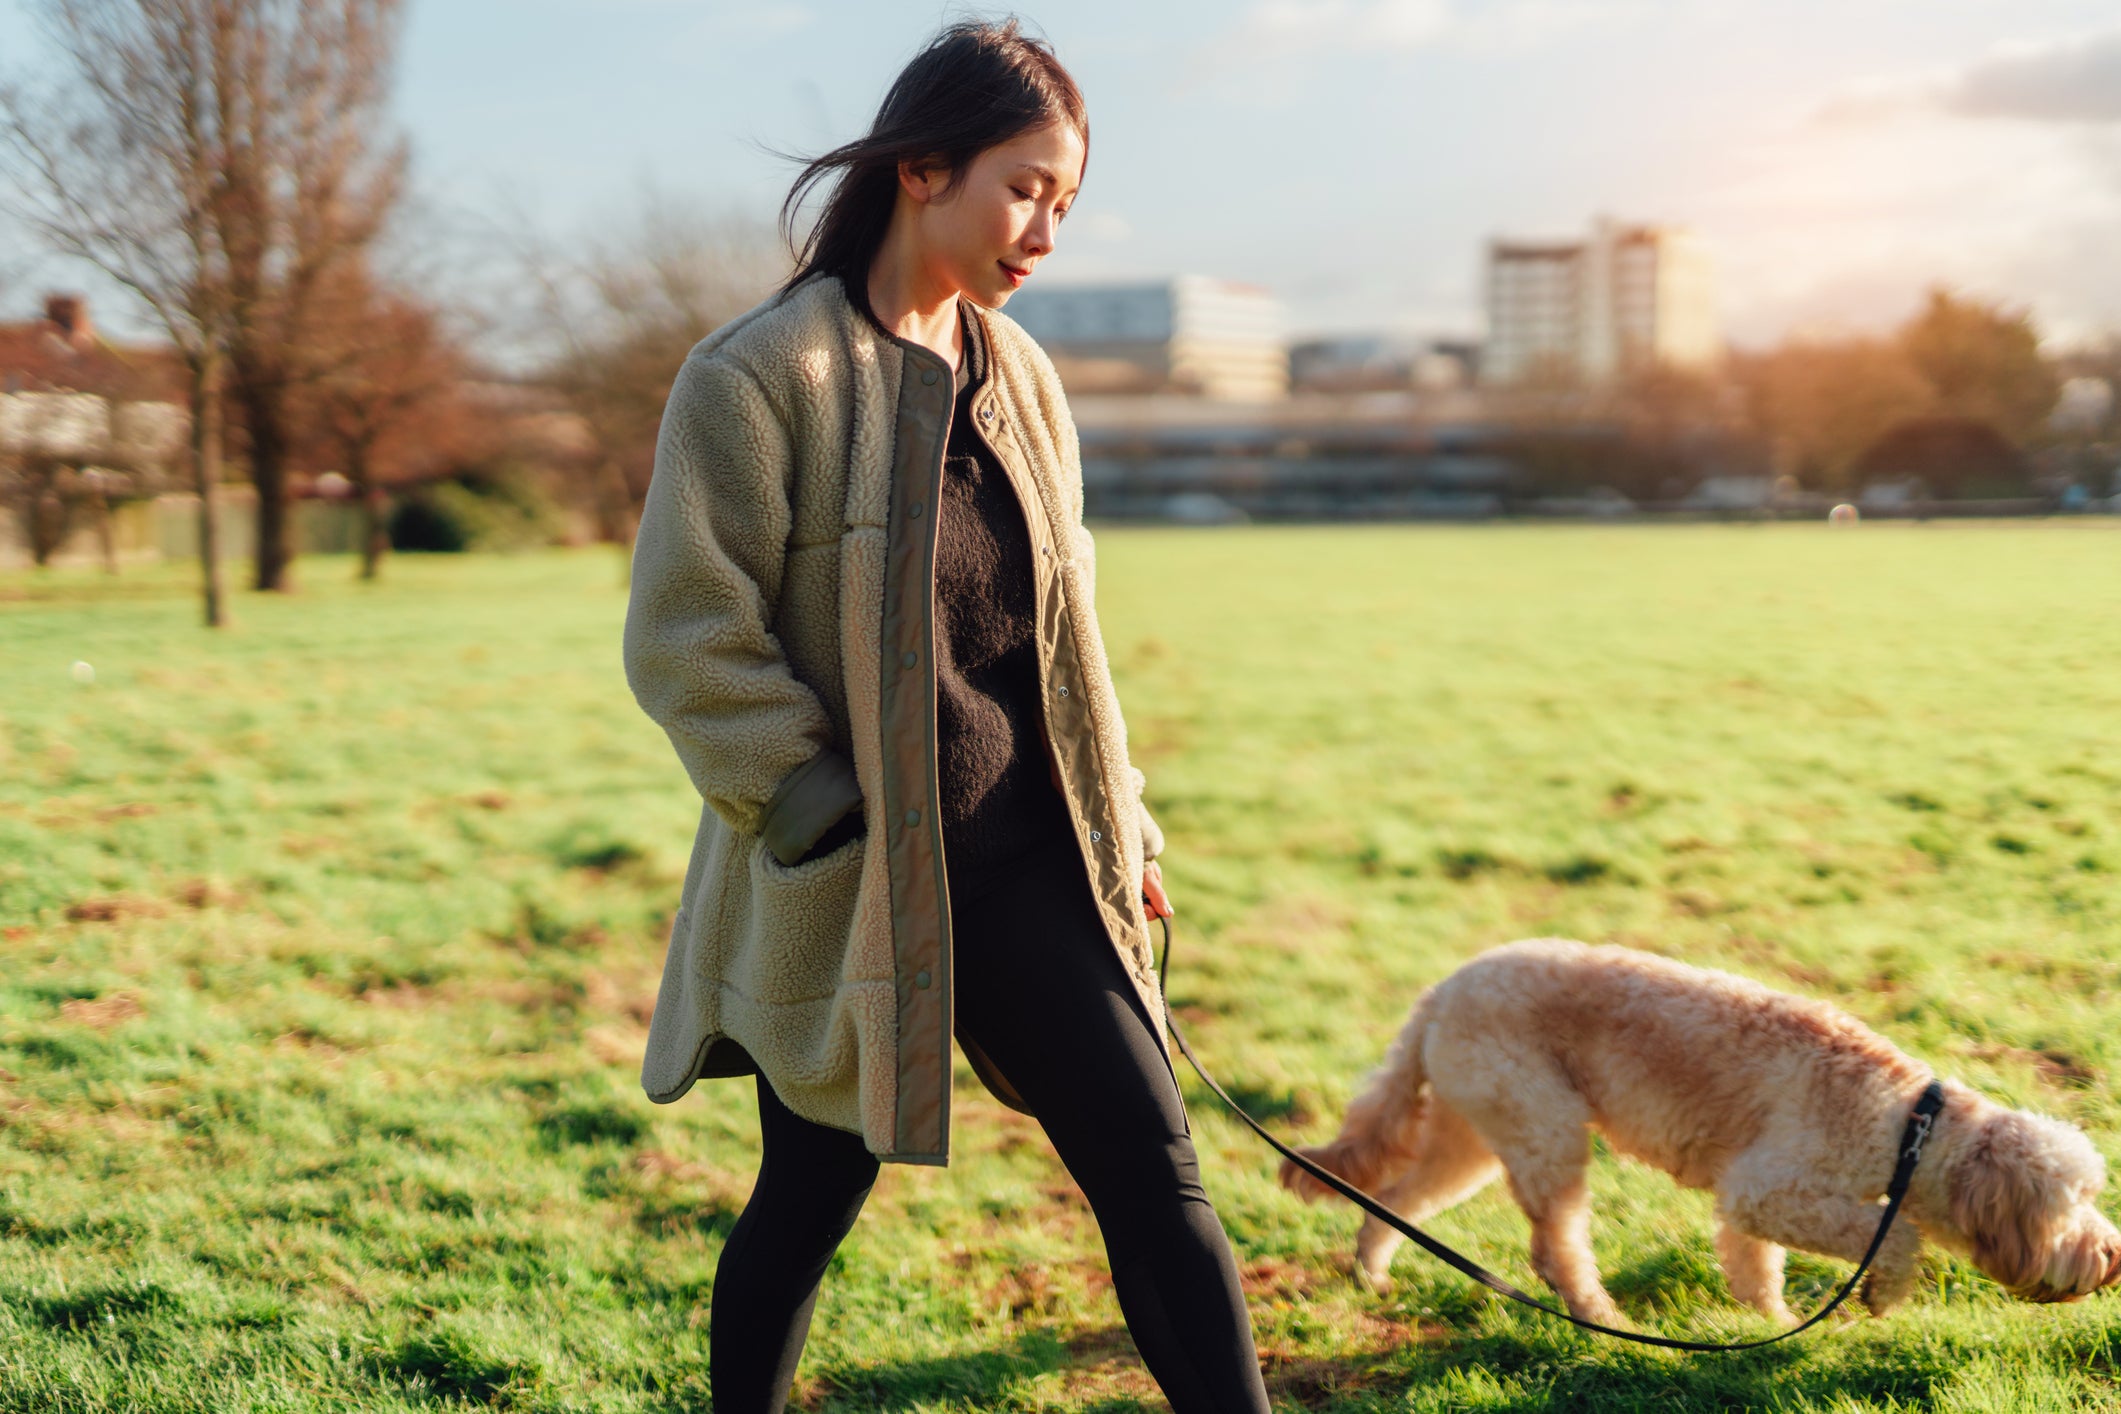 Tutora passeando em parque com seu cachorro na coleira